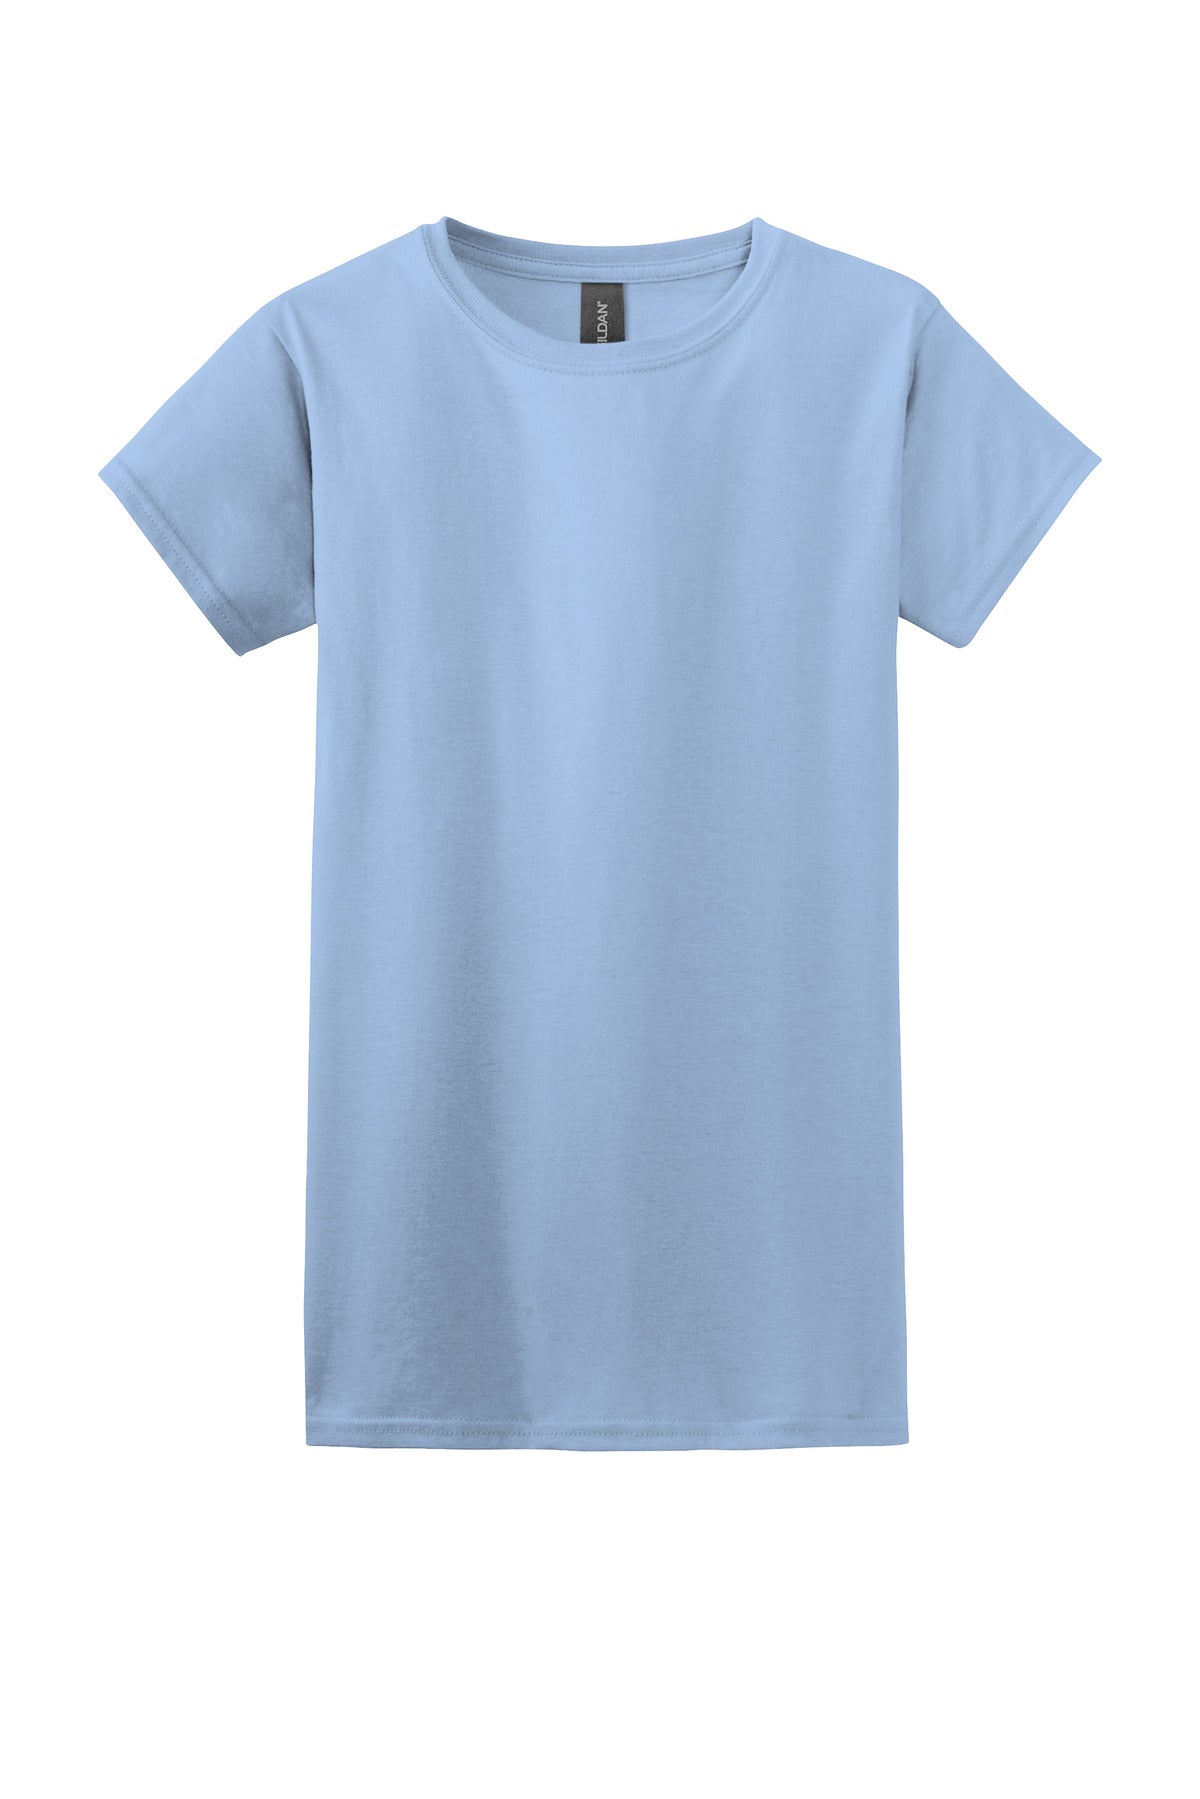 Gildan Softstyle Women’s T-Shirt